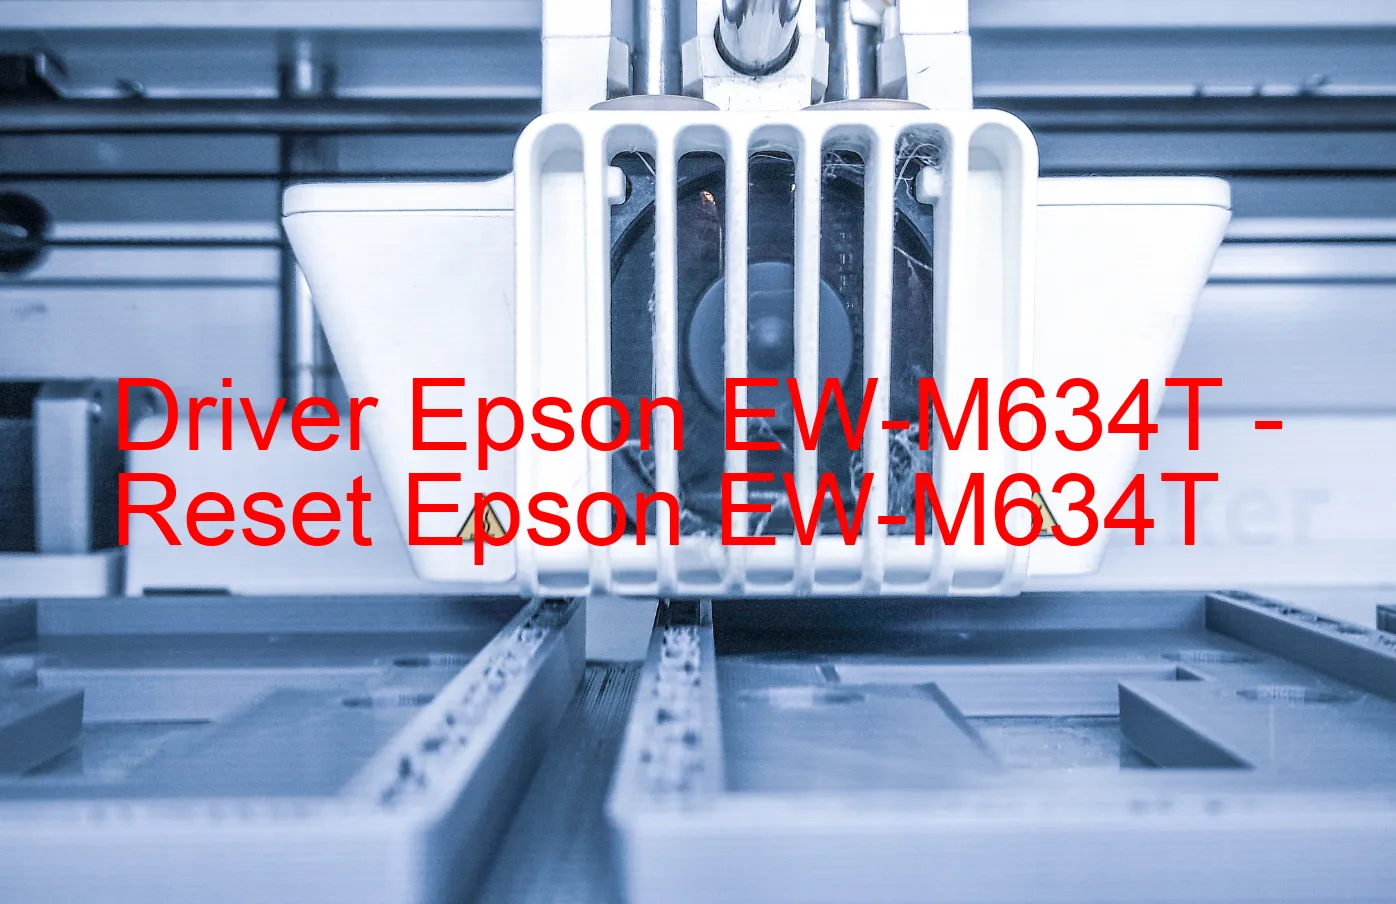 Epson EW-M634Tのドライバー、Epson EW-M634Tのリセットソフトウェア